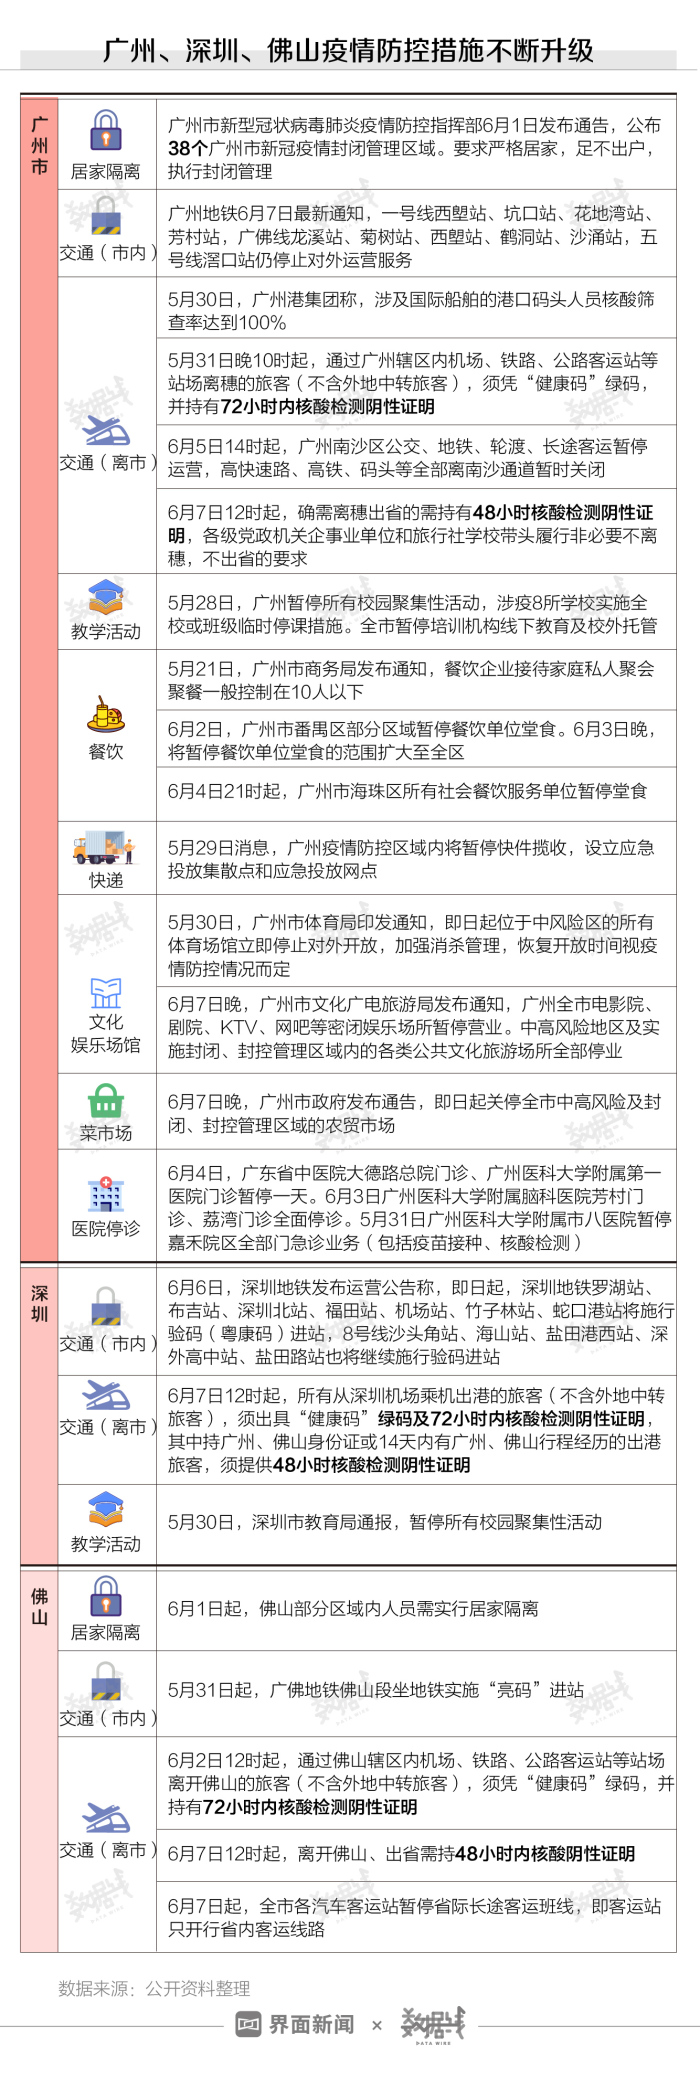 数据 广州疫情仍有反复 疫苗接种速度已提升26倍 界面新闻